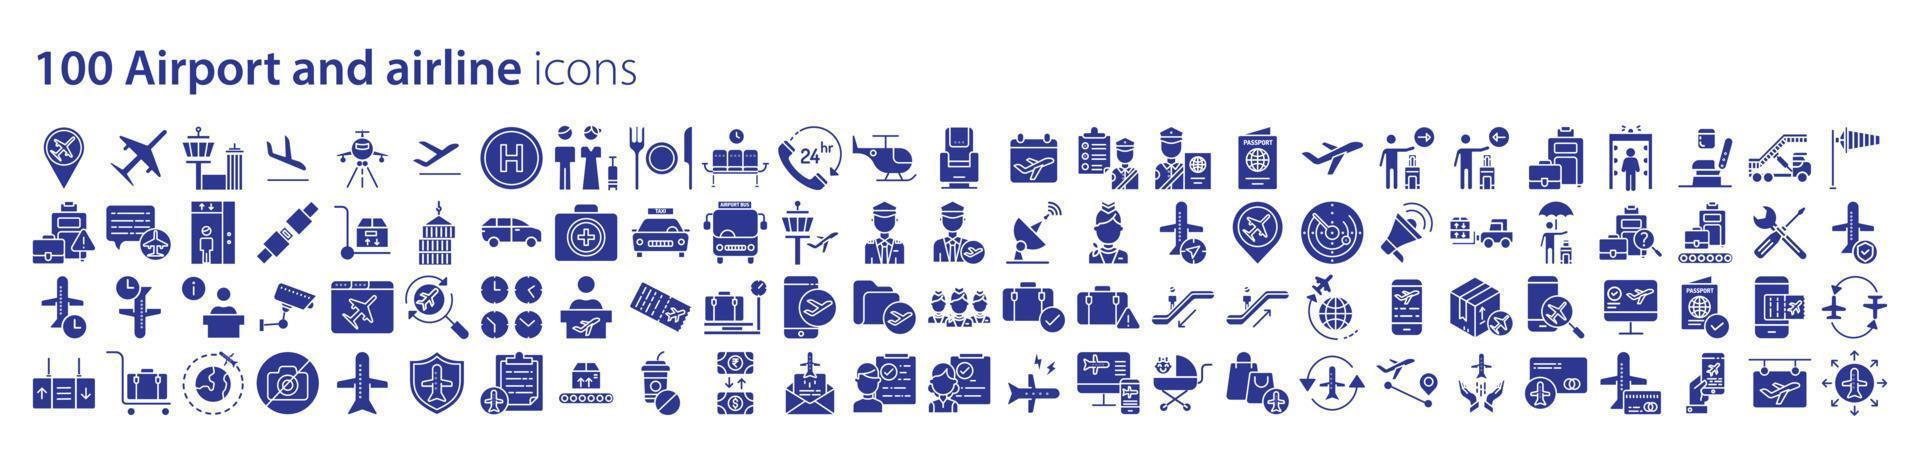 Sammlung von Symbolen im Zusammenhang mit Flughäfen und Fluggesellschaften, einschließlich Symbolen wie Flugzeug, Gepäck, Flug und mehr. Vektorgrafiken, pixelgenau vektor